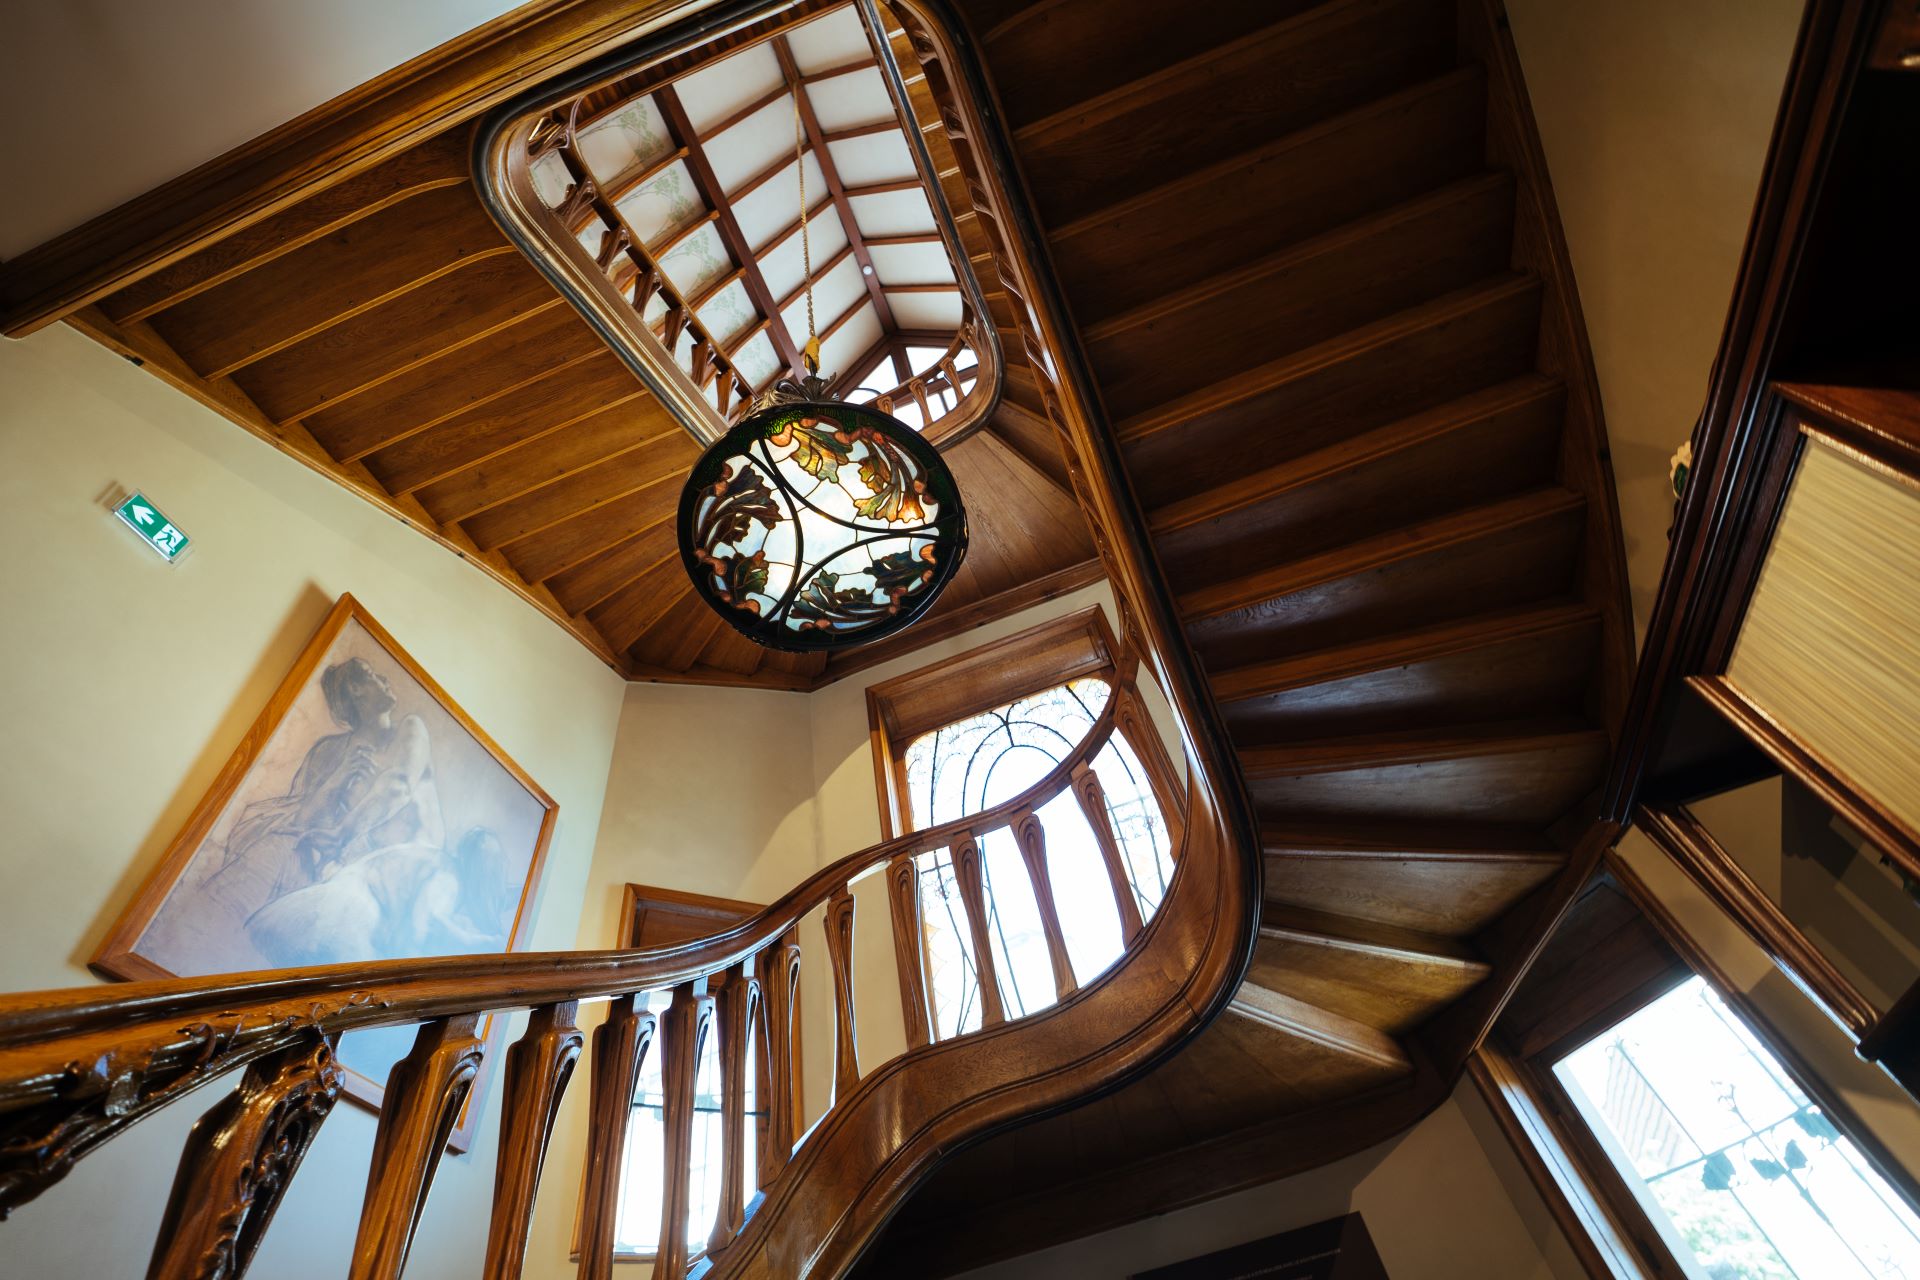 Von unten ist eine Holztreppe zu sehen, die den Kurven der Natur nachempfunden ist. In der Mitte des Bildes hängt eine Buntglaslampe.